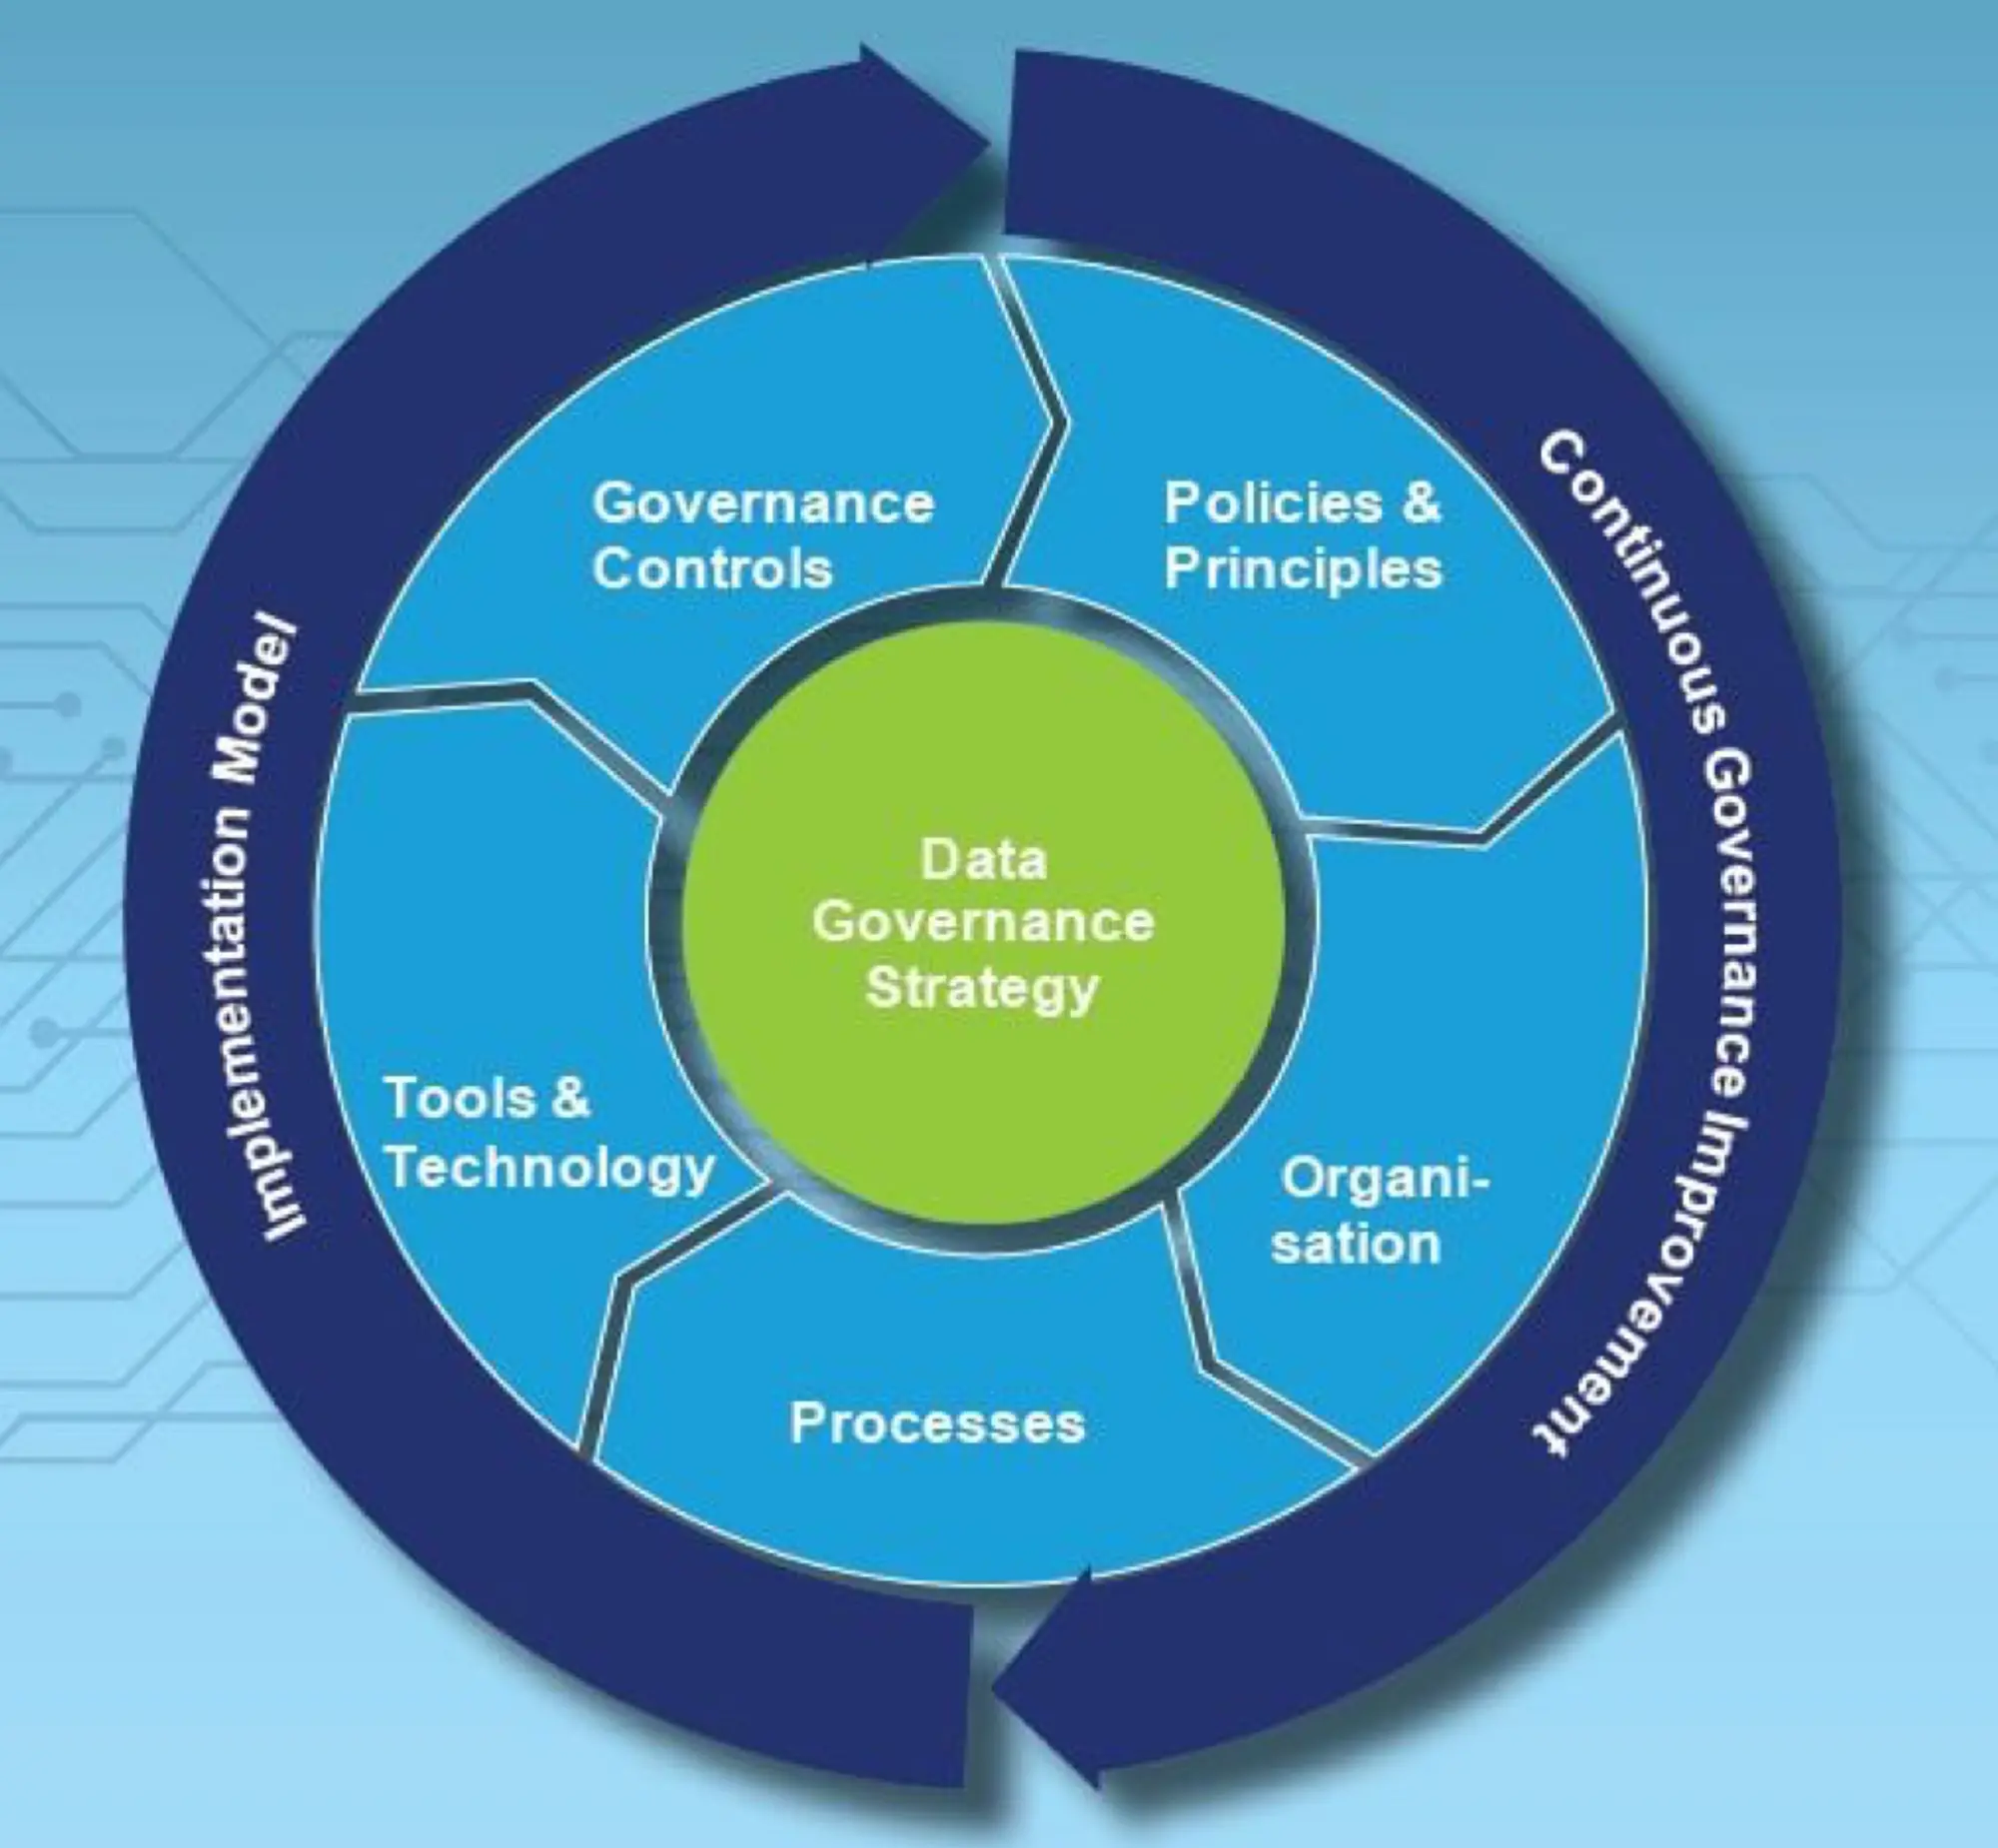 Deloitte’s data governance framework